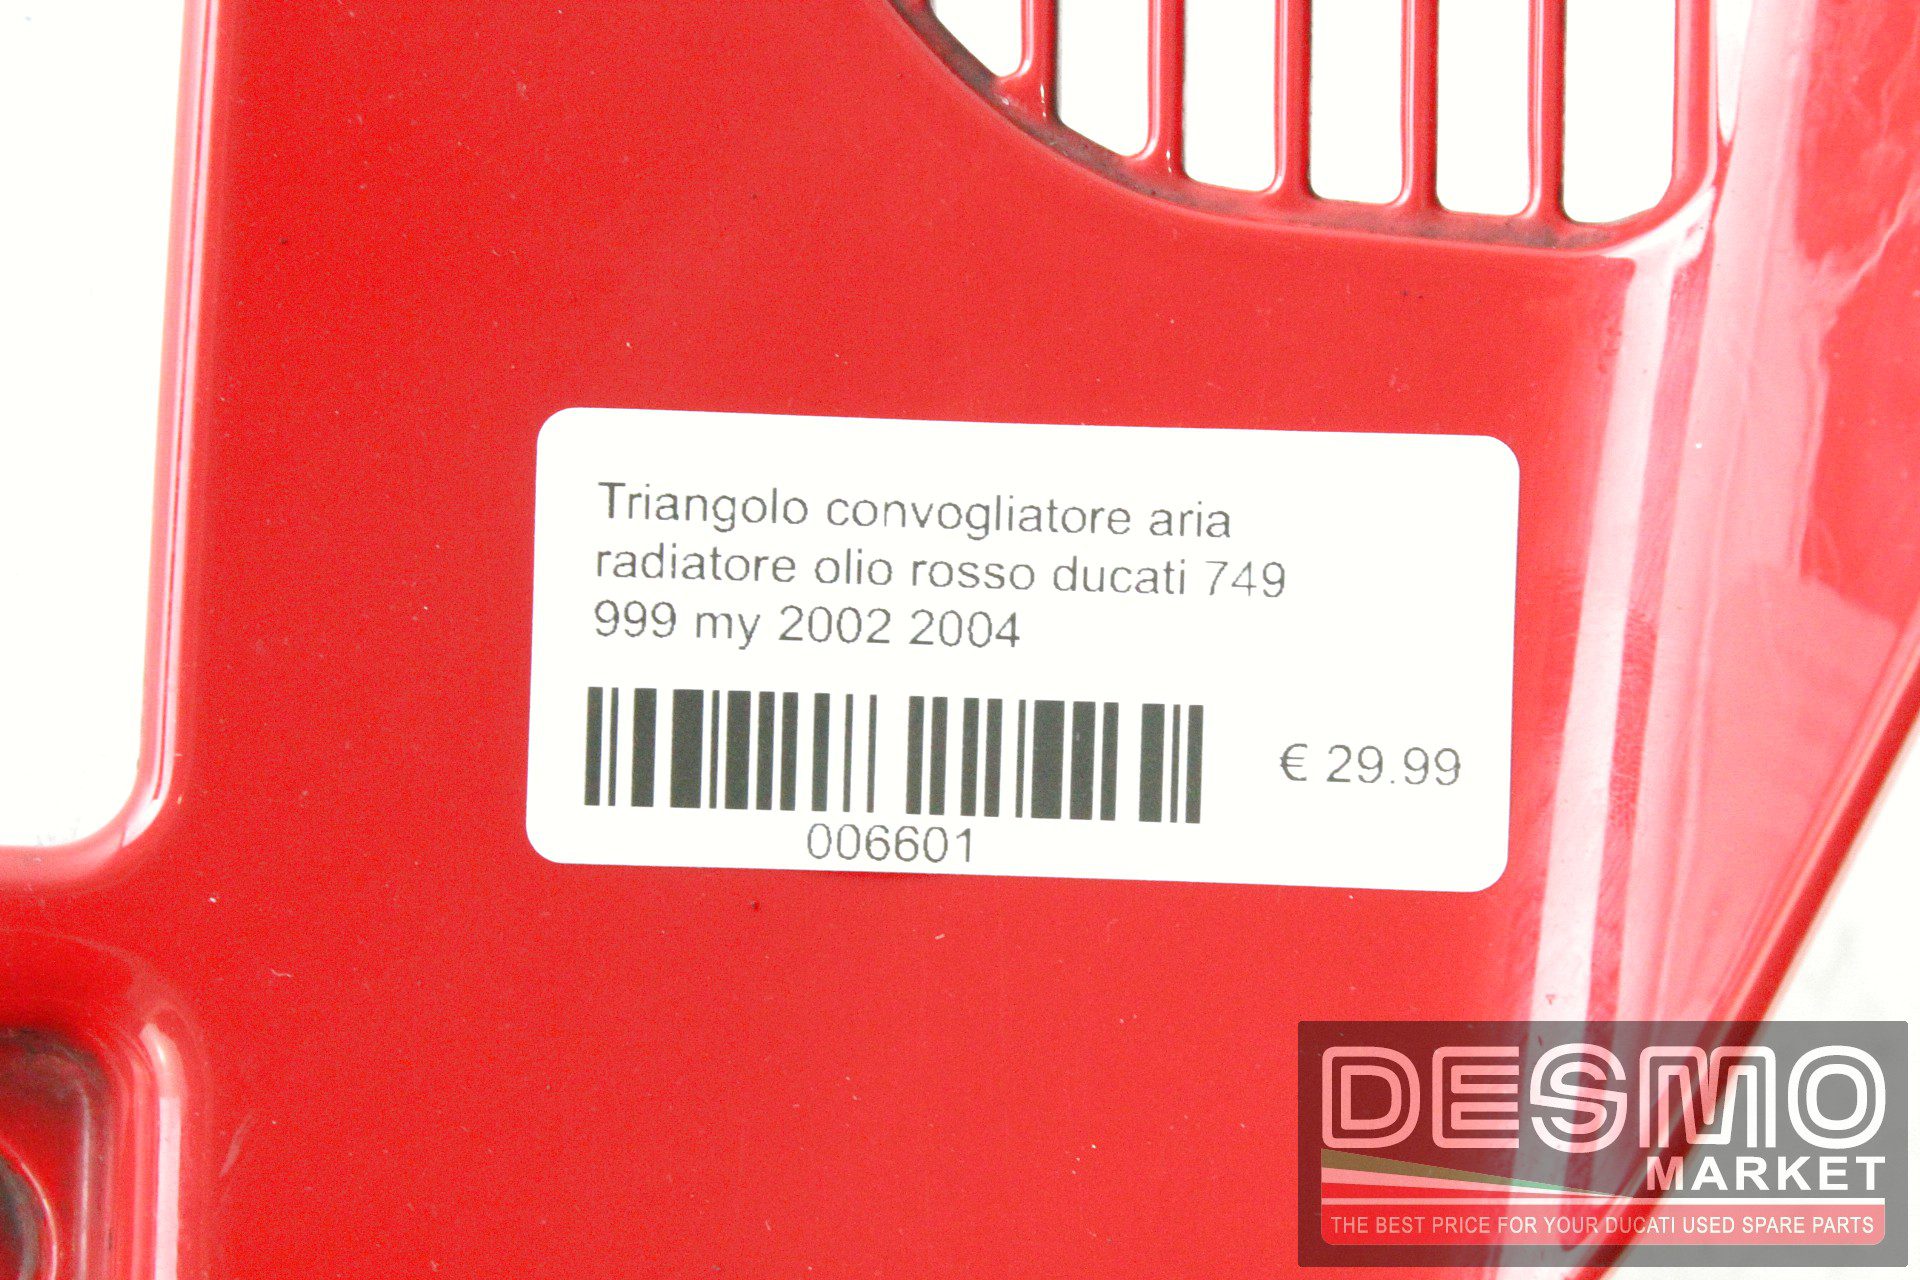 Triangolo convogliatore aria radiatore olio rosso ducati 749 999 my